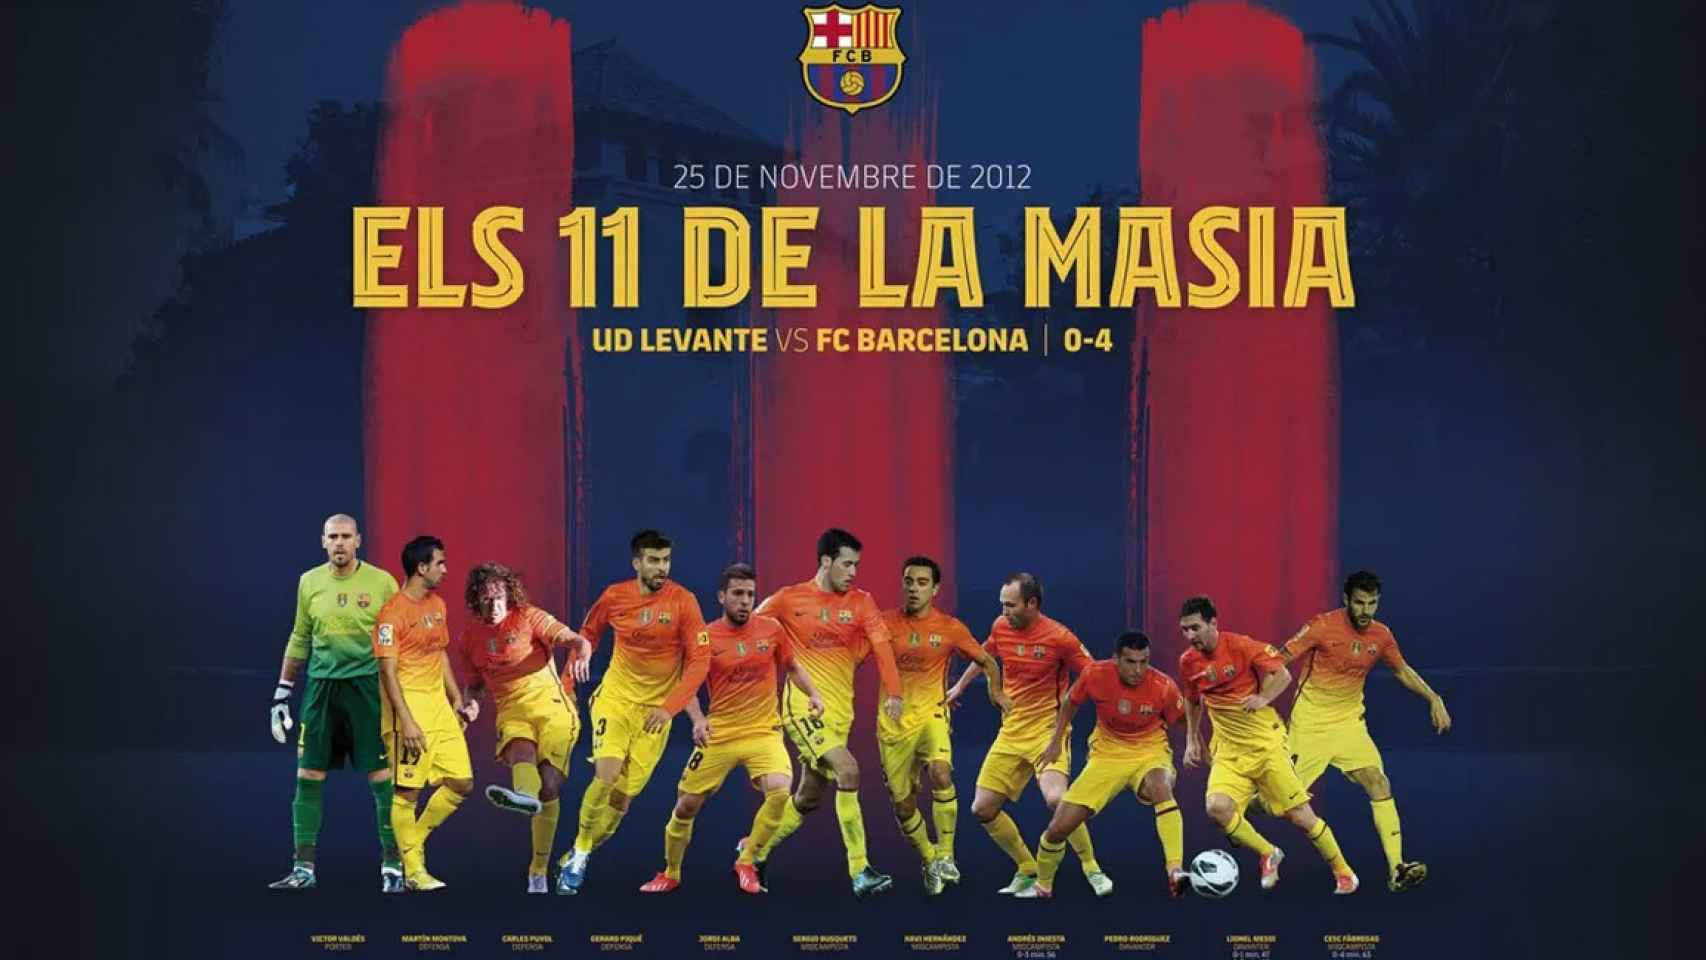 El once 'made in La Masía' del Barça en 2012